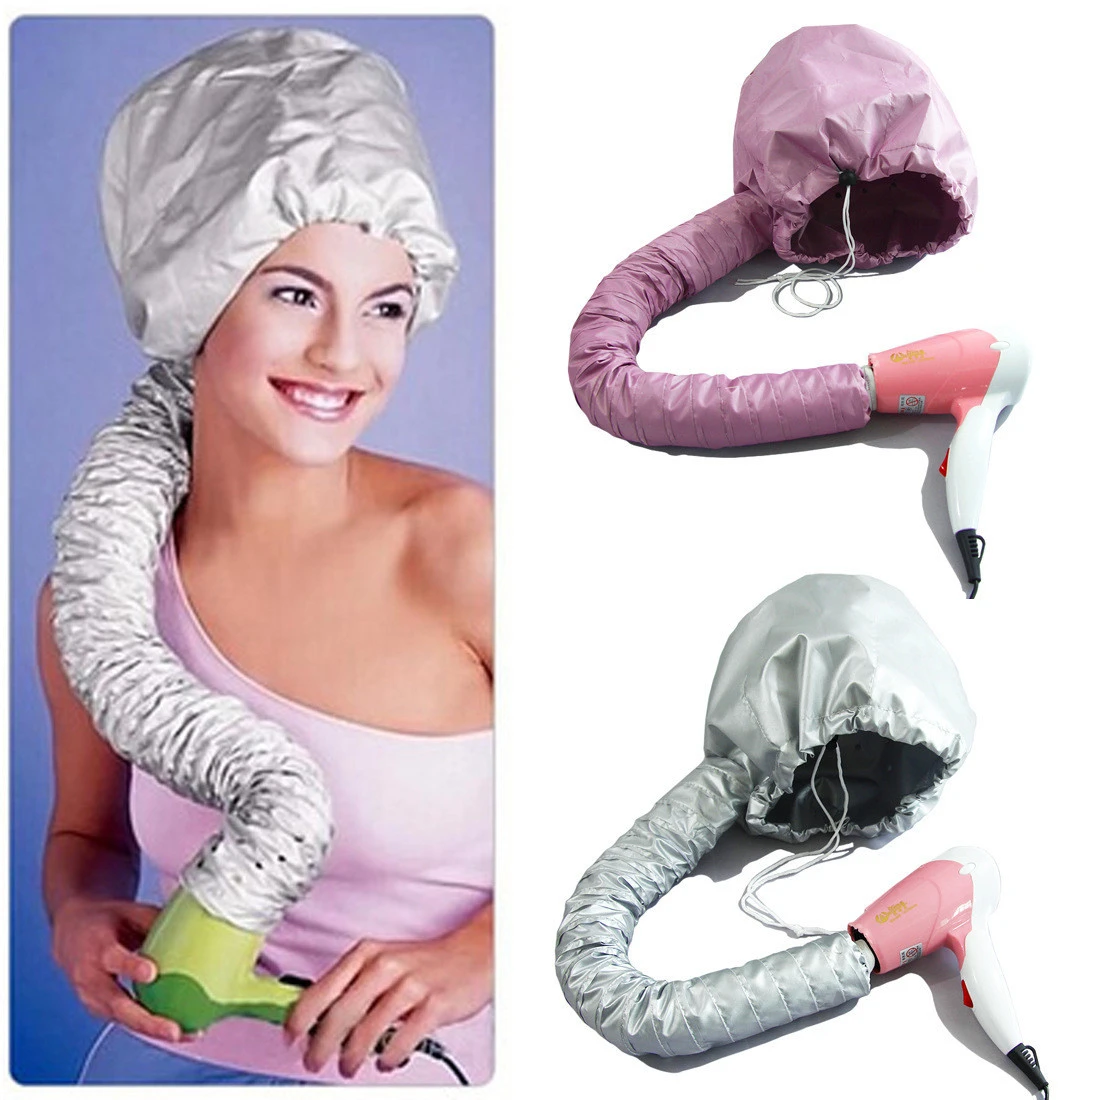 2021 New Amazon Hot sell Professional Salon Nylon Attachment Hair Dryer Soft Bonnet Cap Hat bonnet dryer attachment